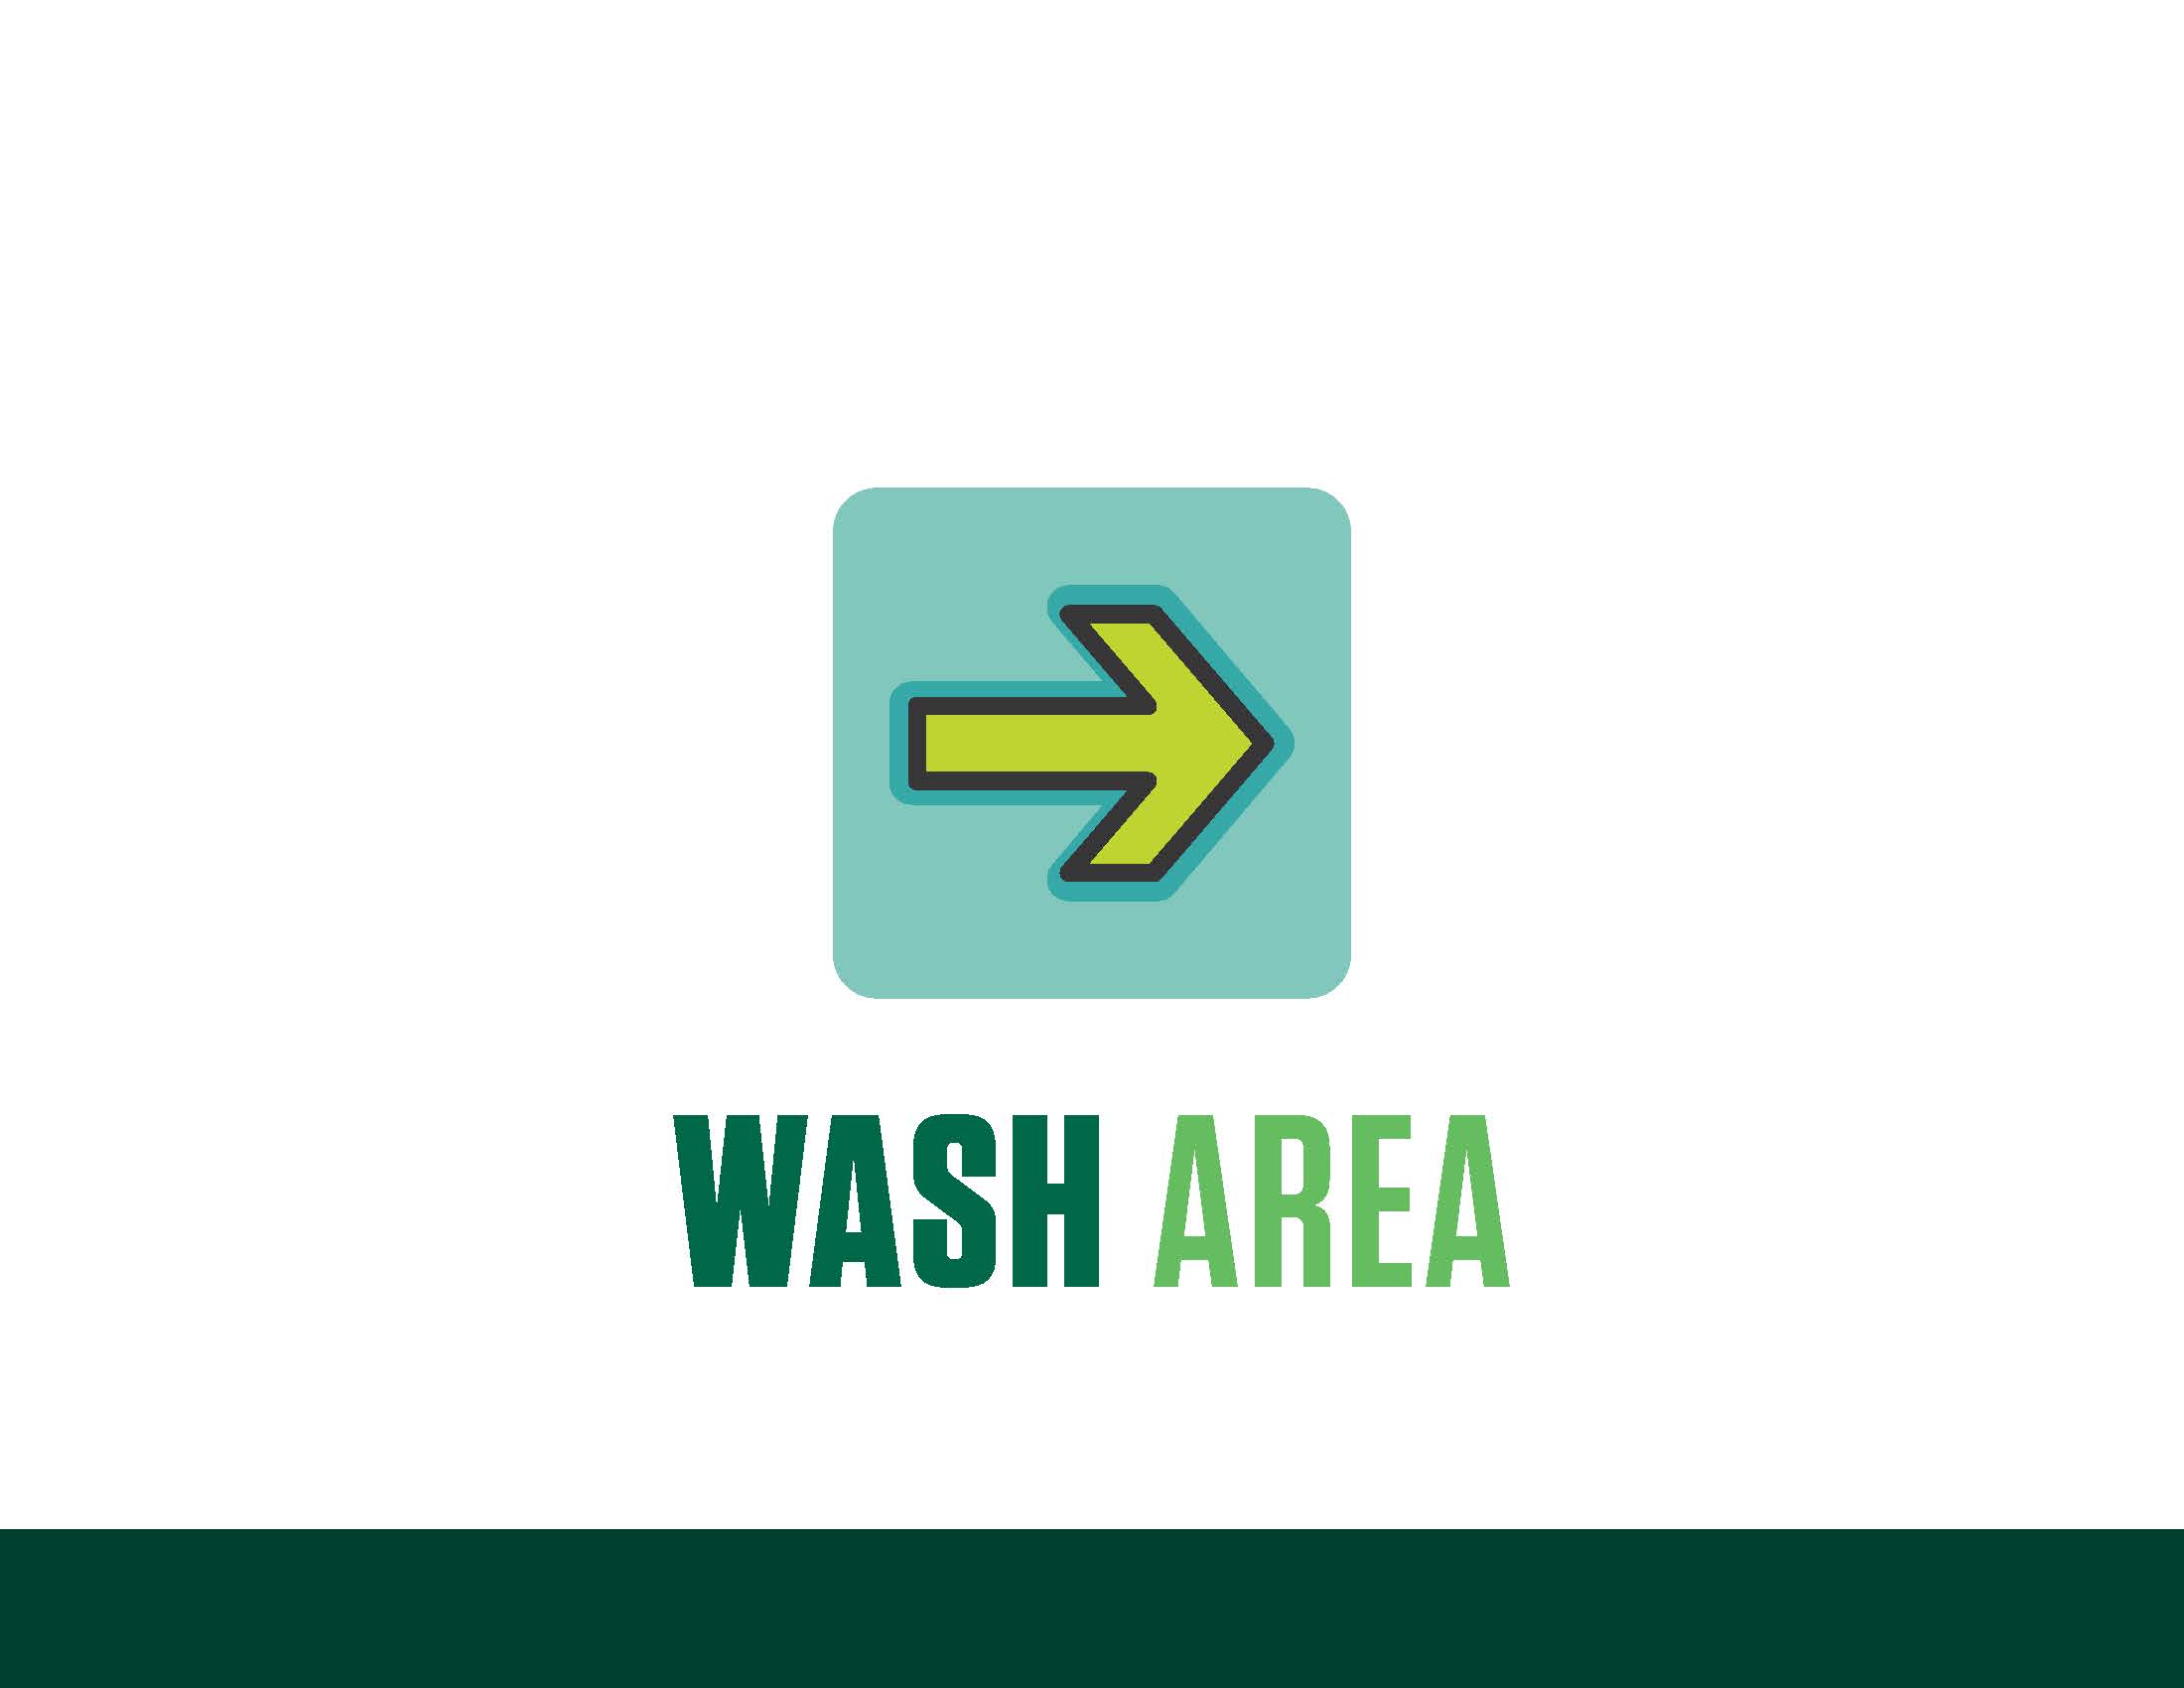 COVID sign - wash area, right arrow